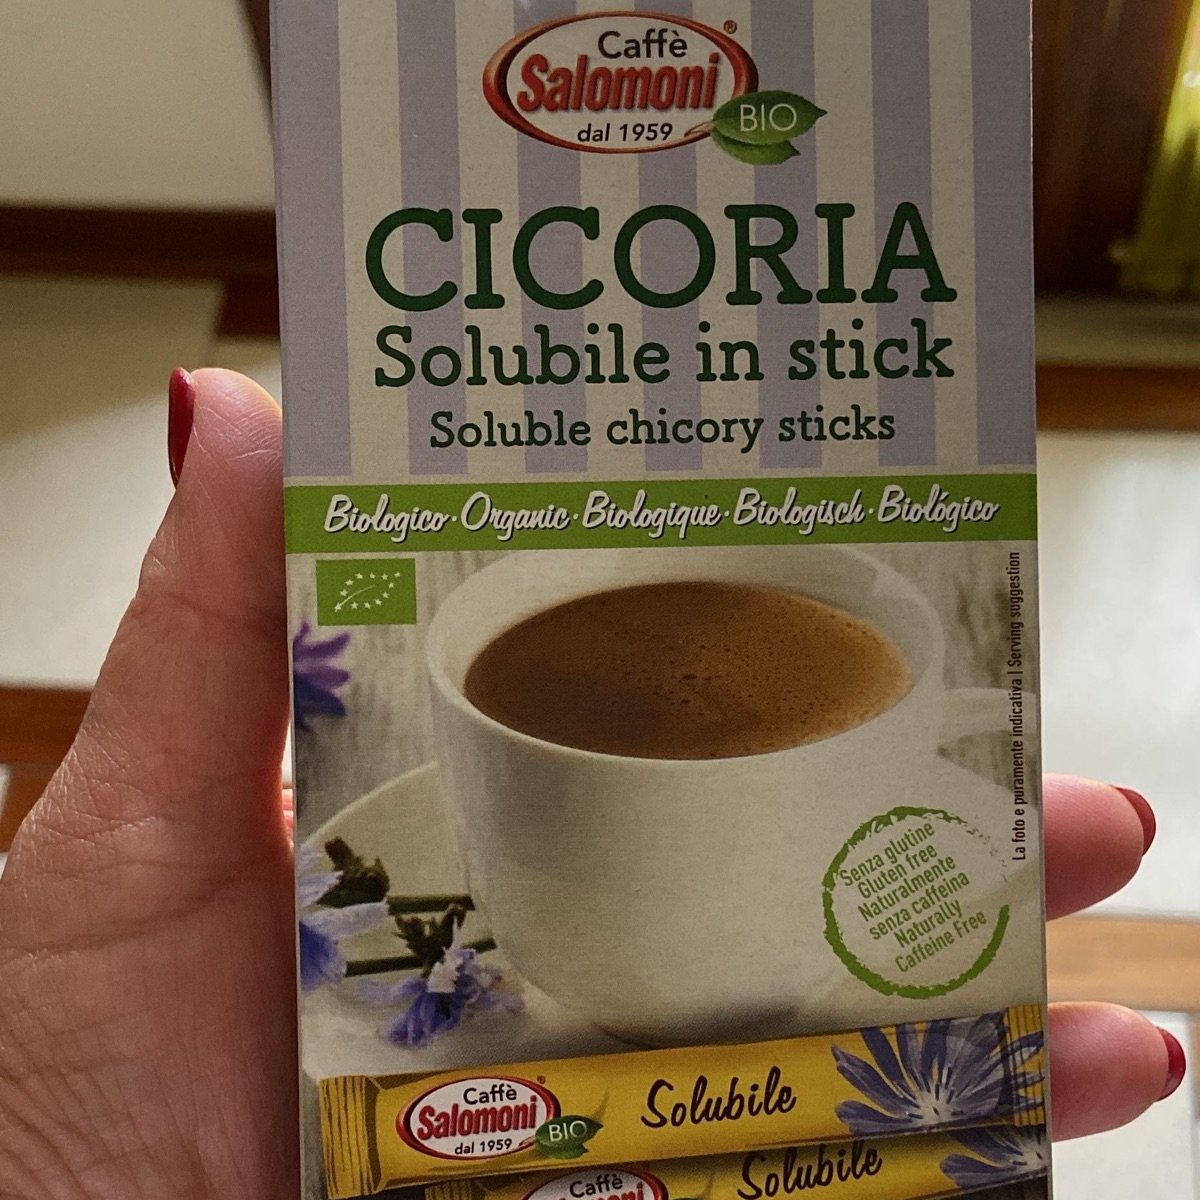 Cicoria solubile in stick Caffè Salomoni-SOLD OUT